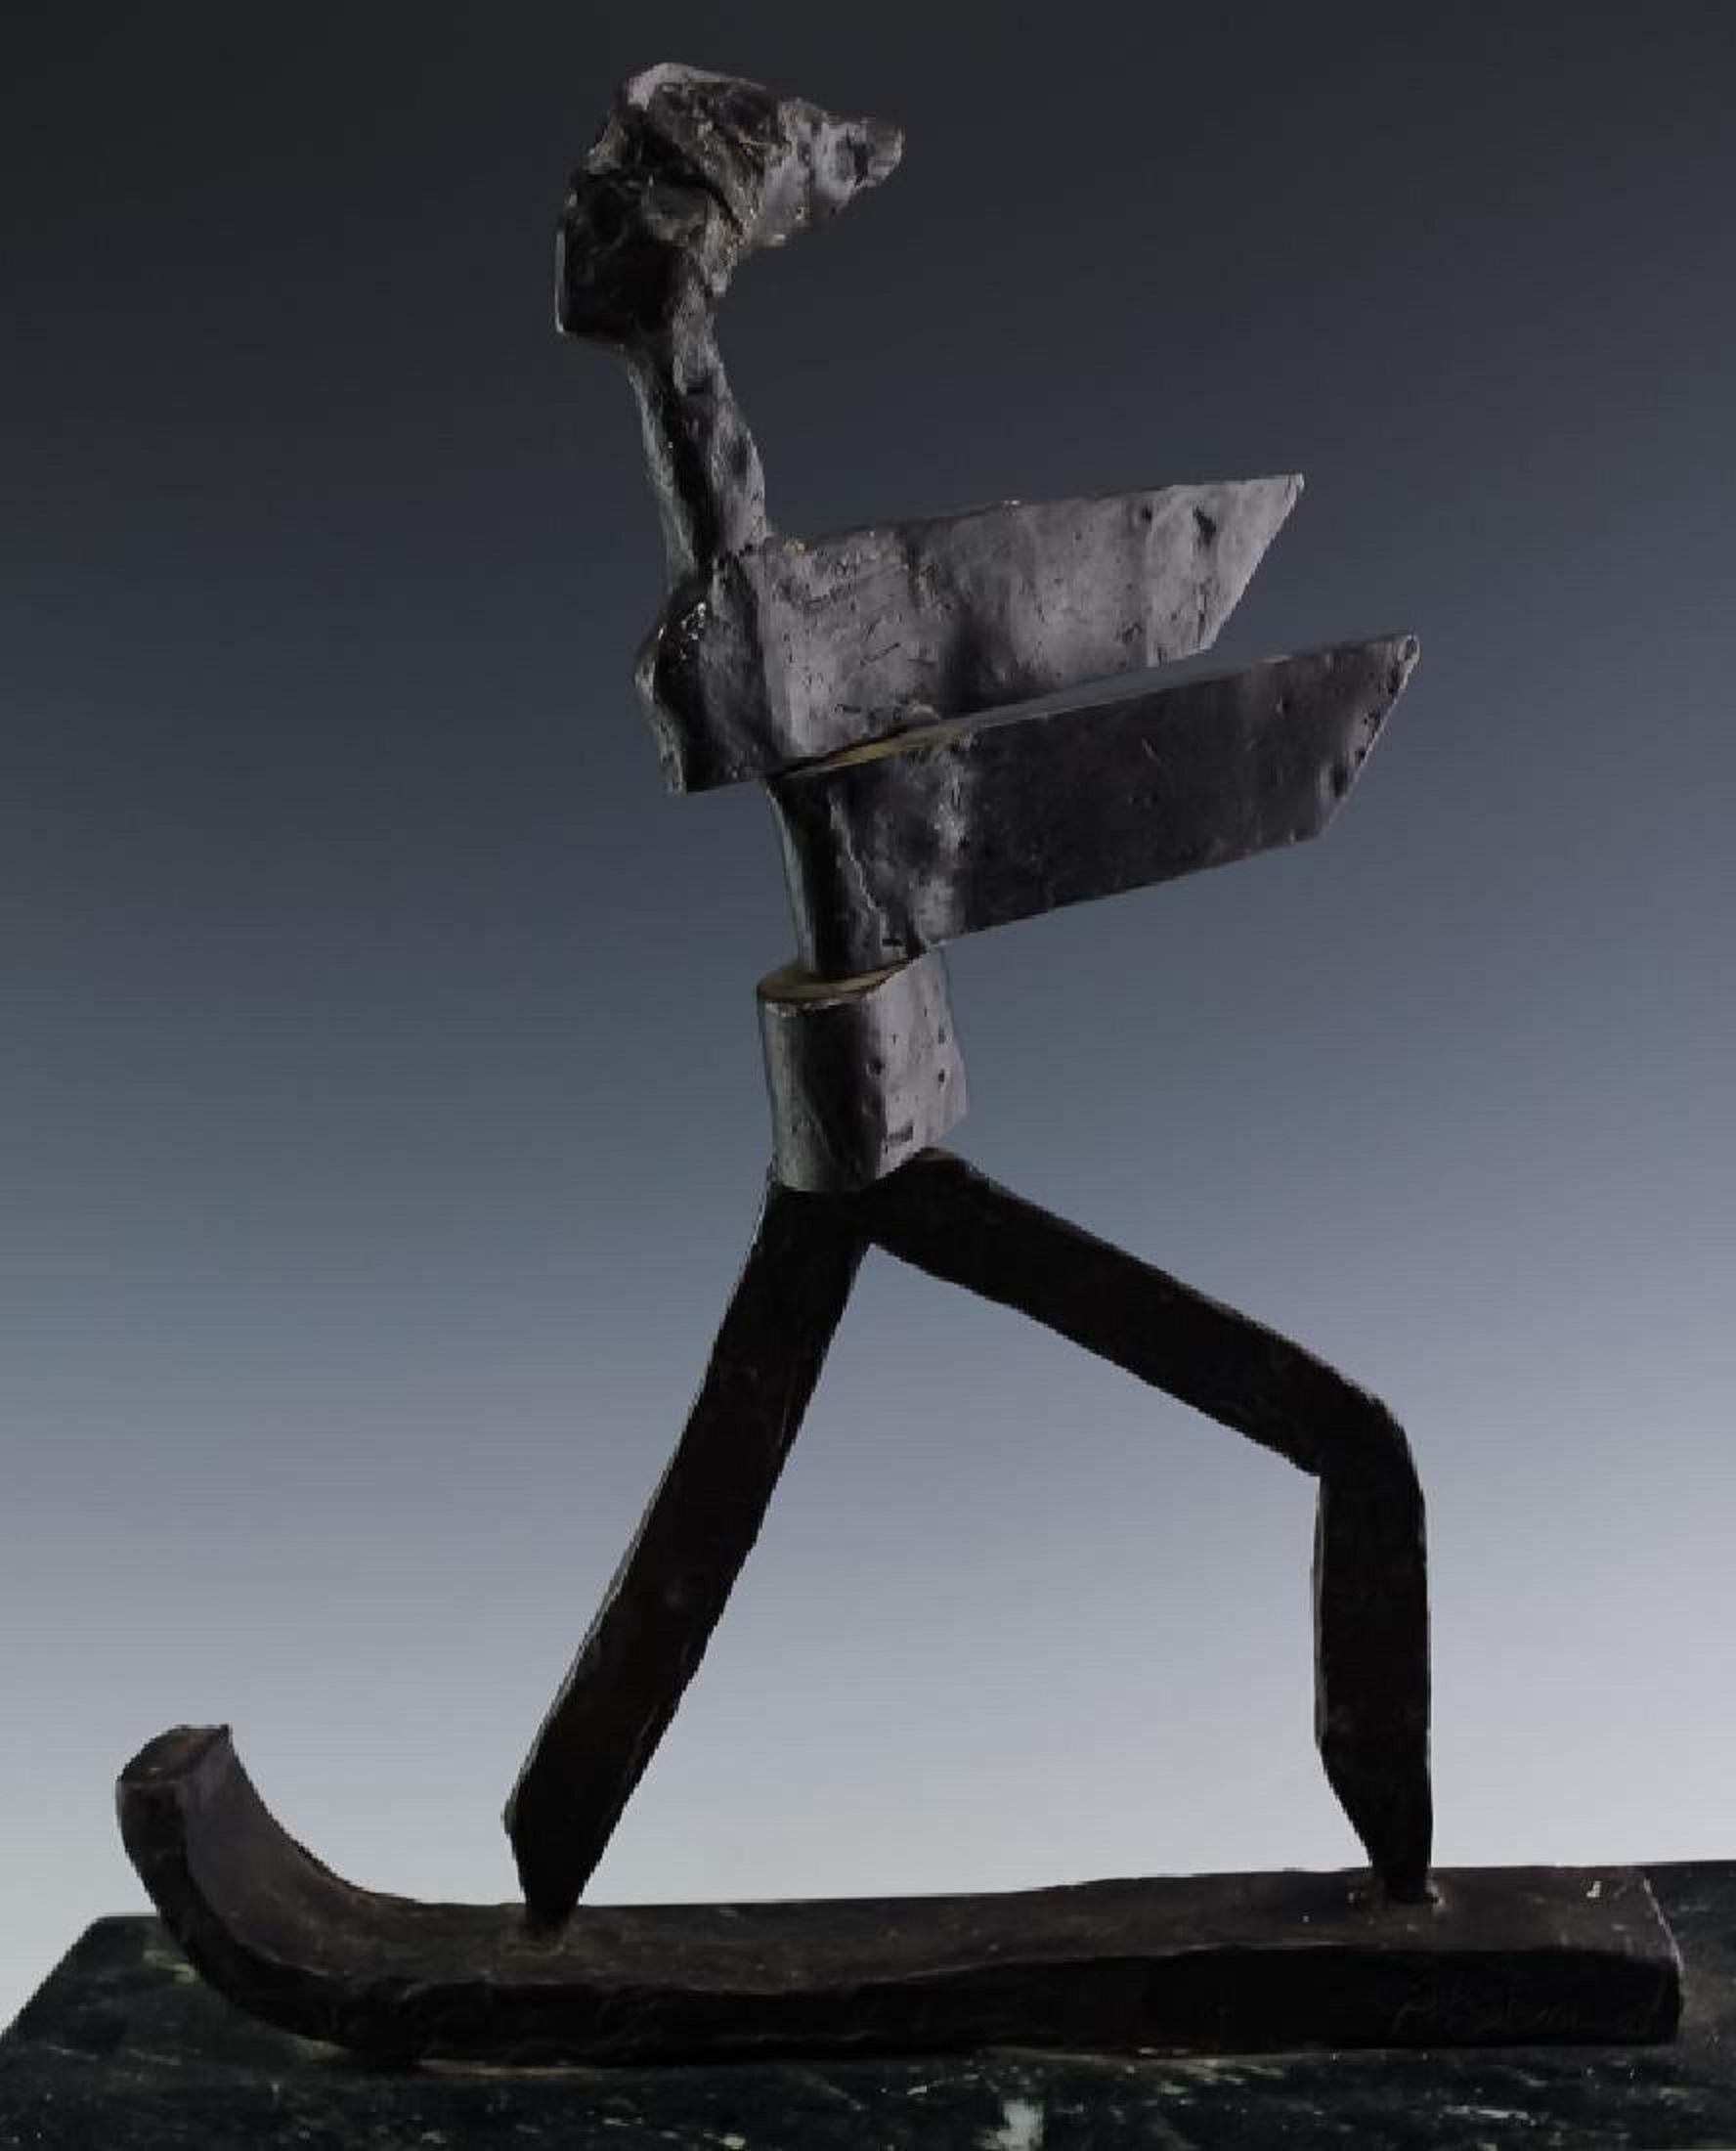 Sculpture expressionniste cintique en bronze - Figure de skieur ou de surfeur moderniste - Or Abstract Sculpture par J. James Akston